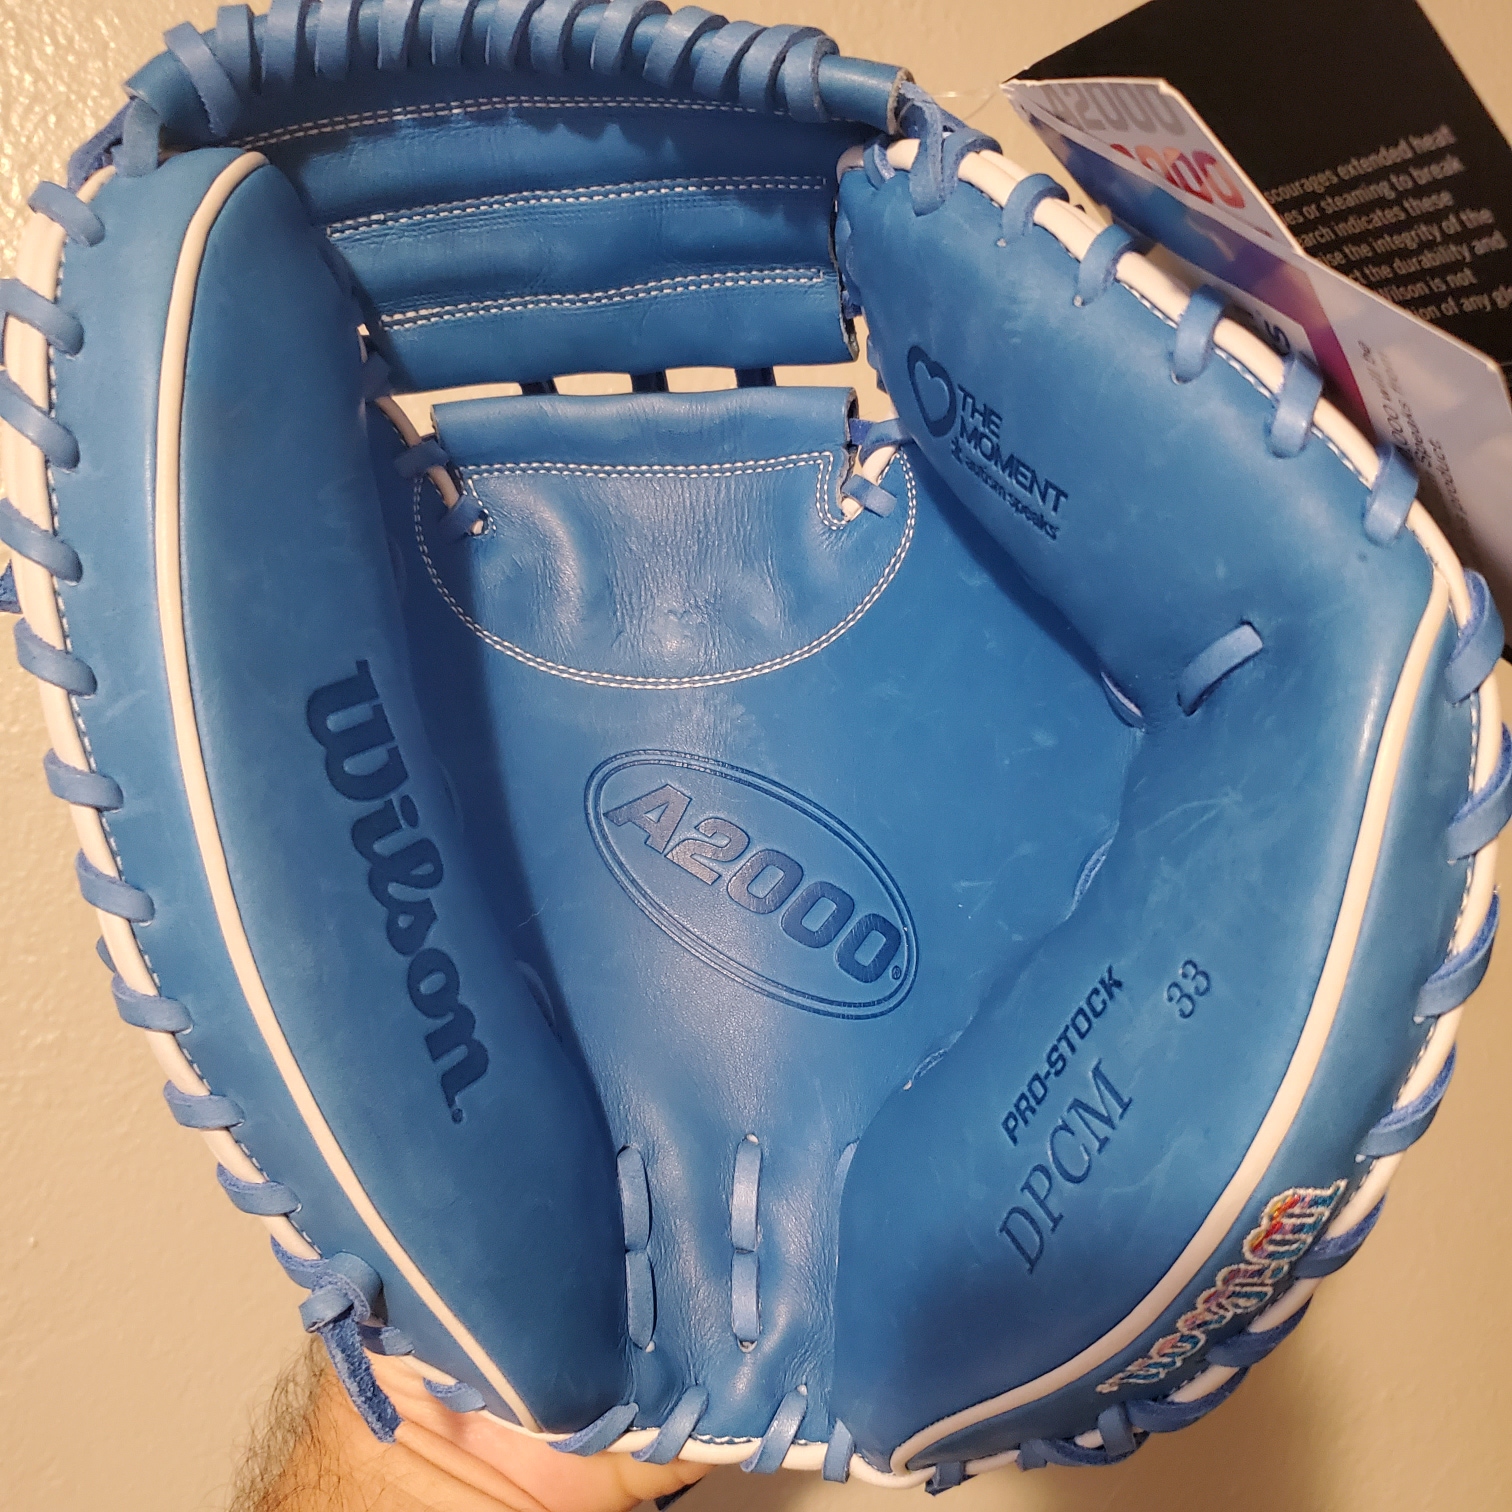 New Wilson Right Hand Throw Catcher's A2000 Baseball Glove 33"